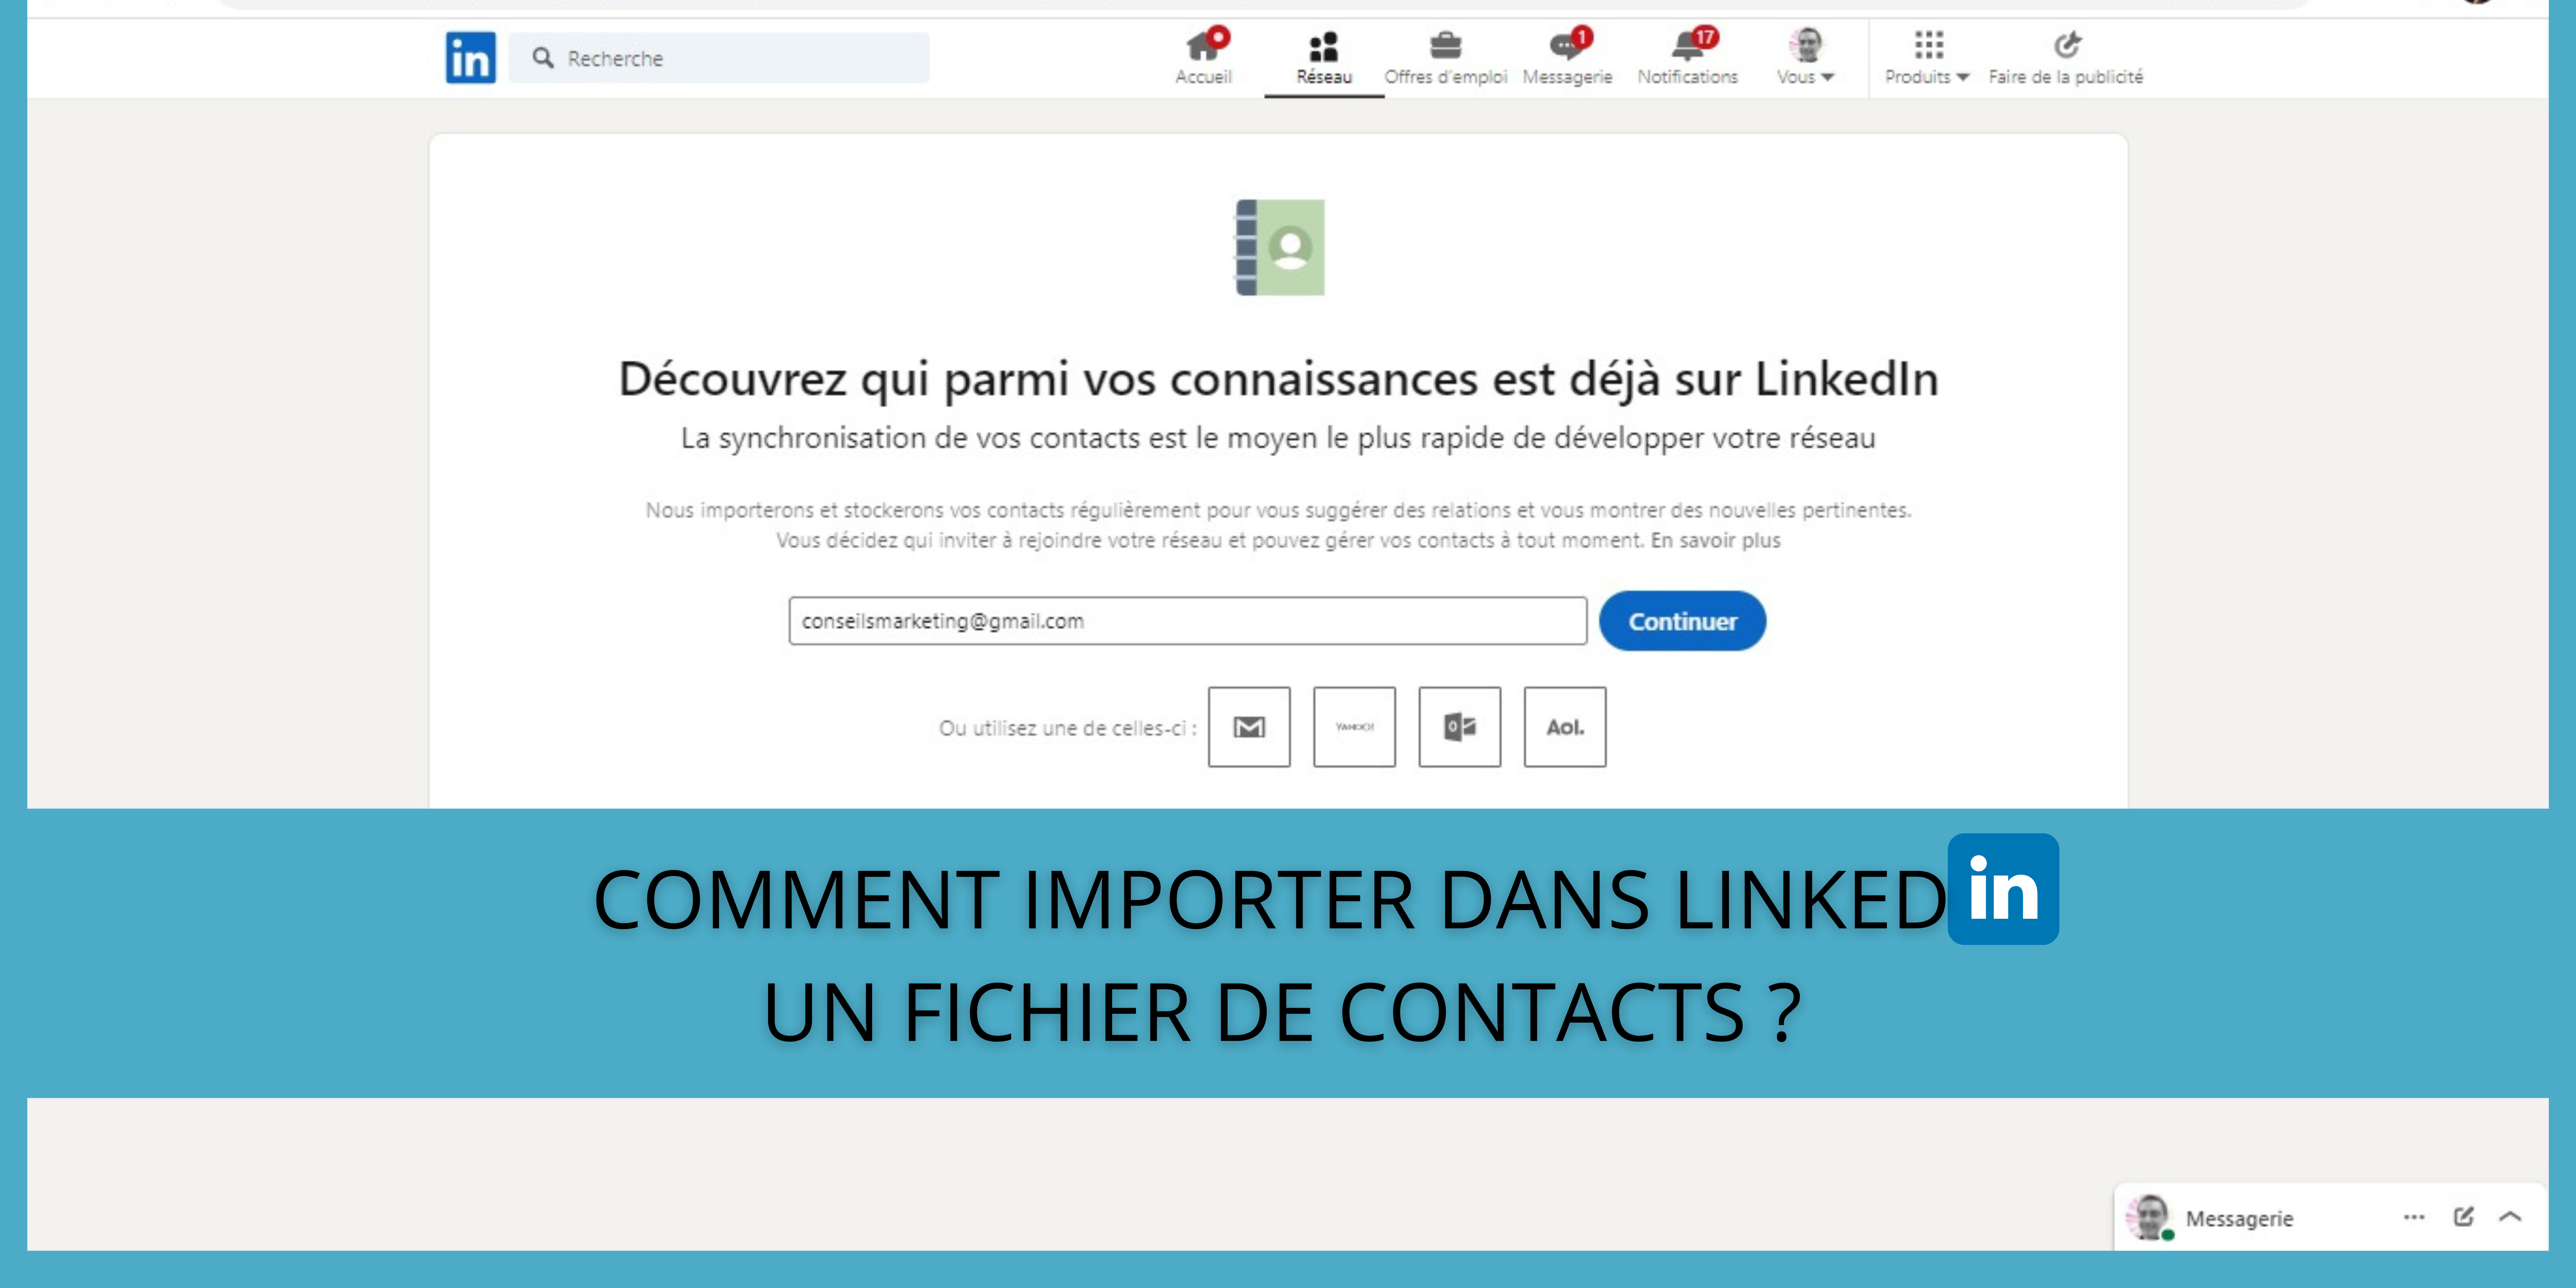 Comment importer dans LinkedIn un fichier de contacts ? 68